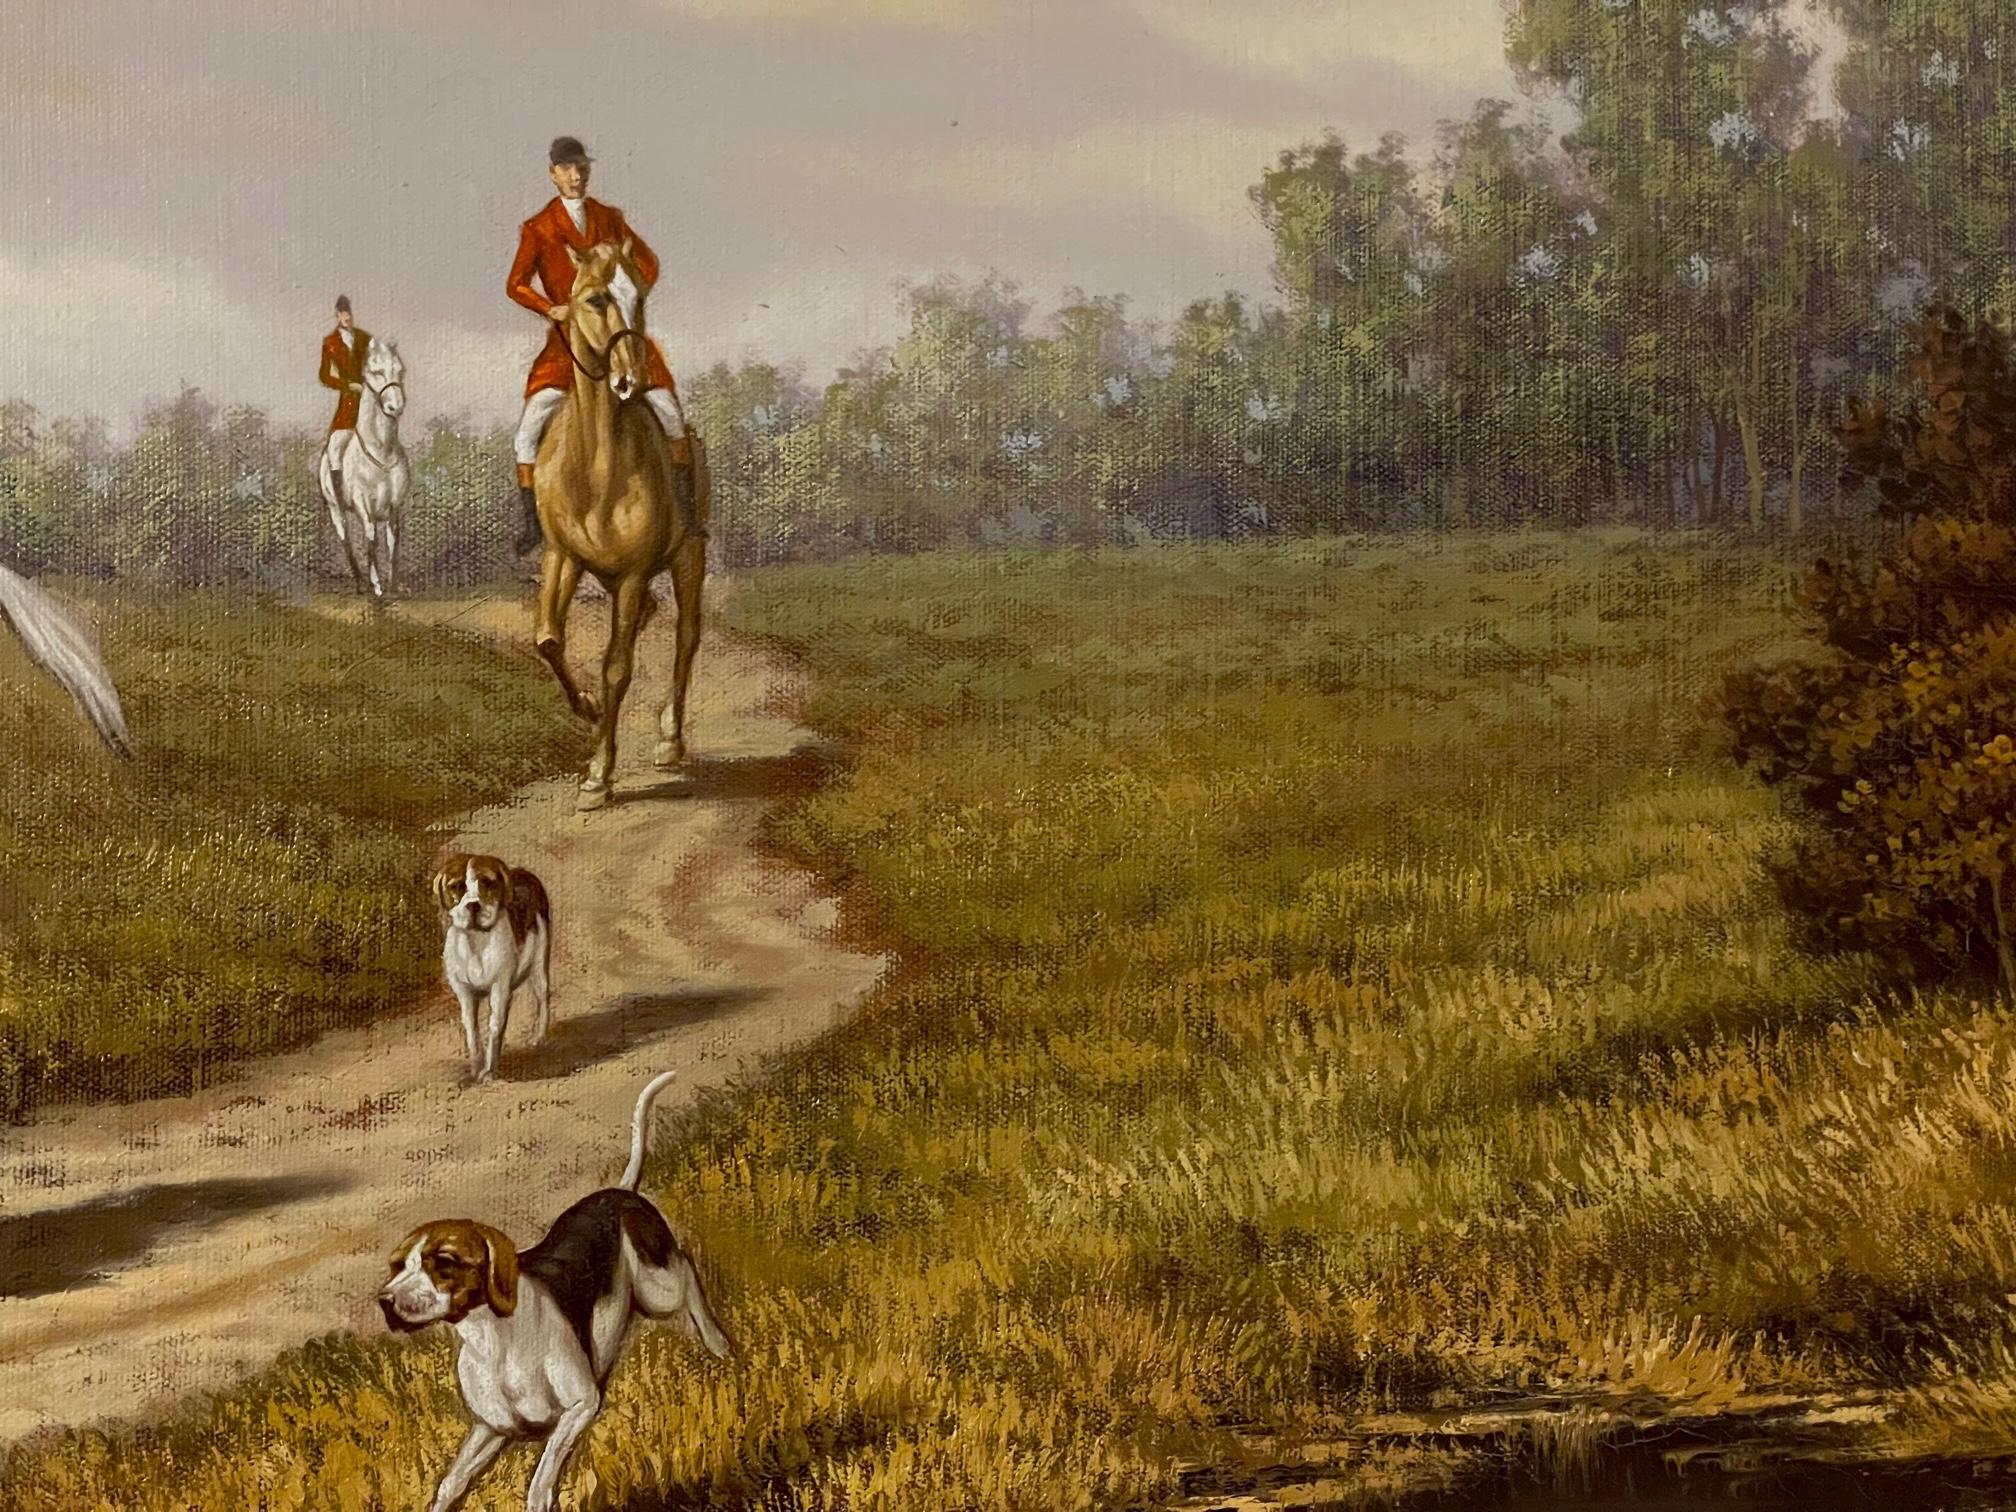 Ölgemälde von Pferden und Hunden auf einer Landstraße, ist dies eine zeitgenössische 20. Jahrhundert Landschaft Gemälde in ausgezeichnetem Zustand.  Die Farben sind klar und zeigen in der Mitte ein weißes Pferd mit einem traditionellen Reiter in